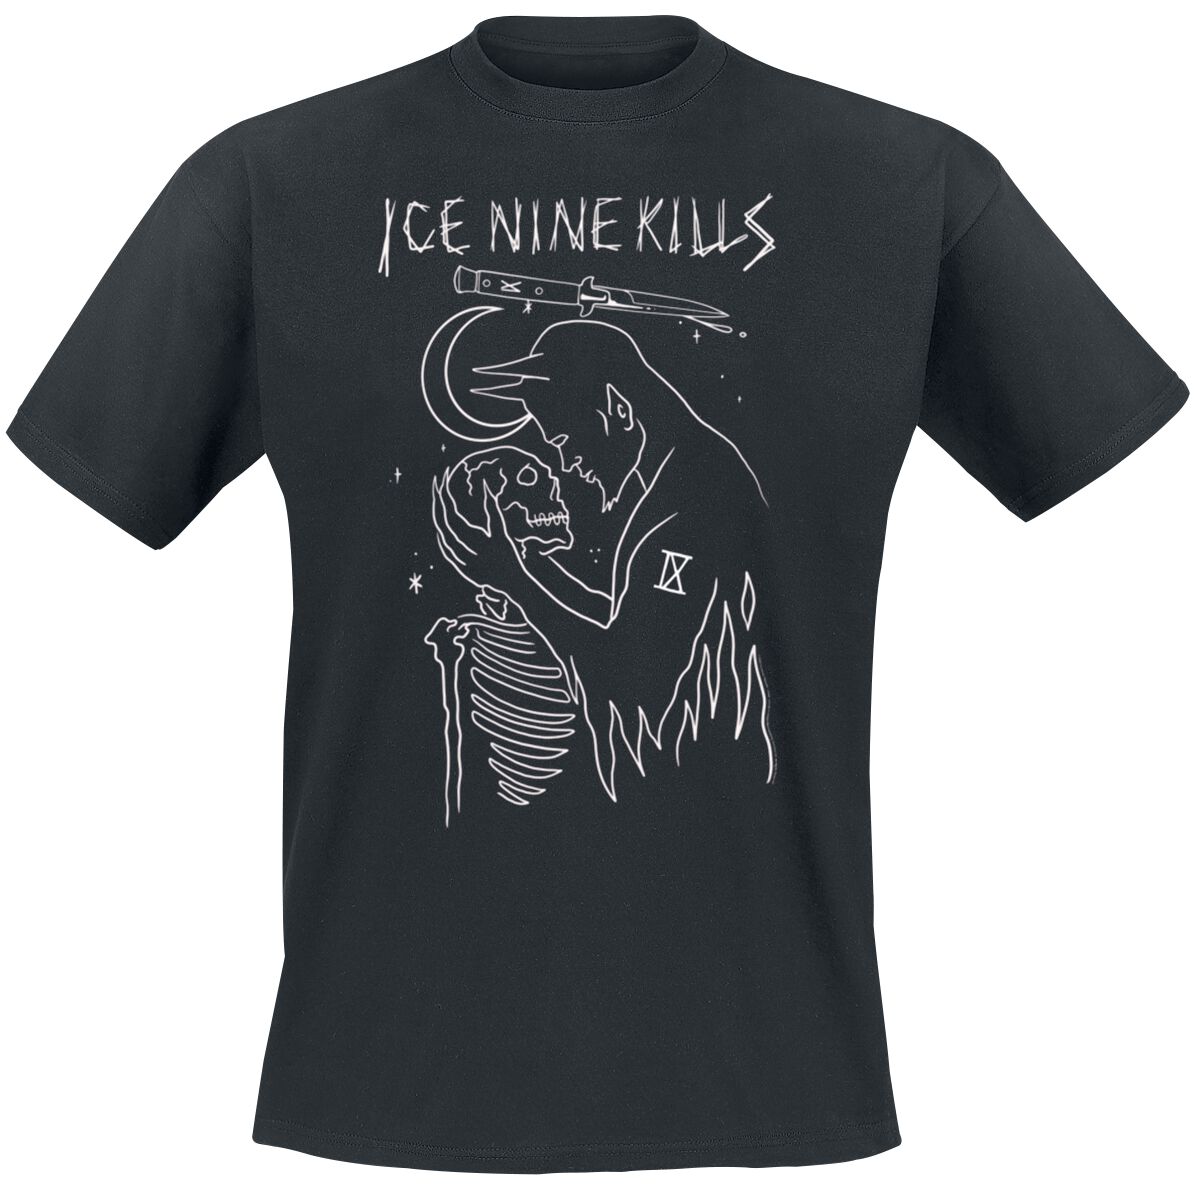 Ice Nine Kills T-Shirt - Demonic Romantic - M bis 4XL - für Männer - Größe 4XL - schwarz  - Lizenziertes Merchandise!